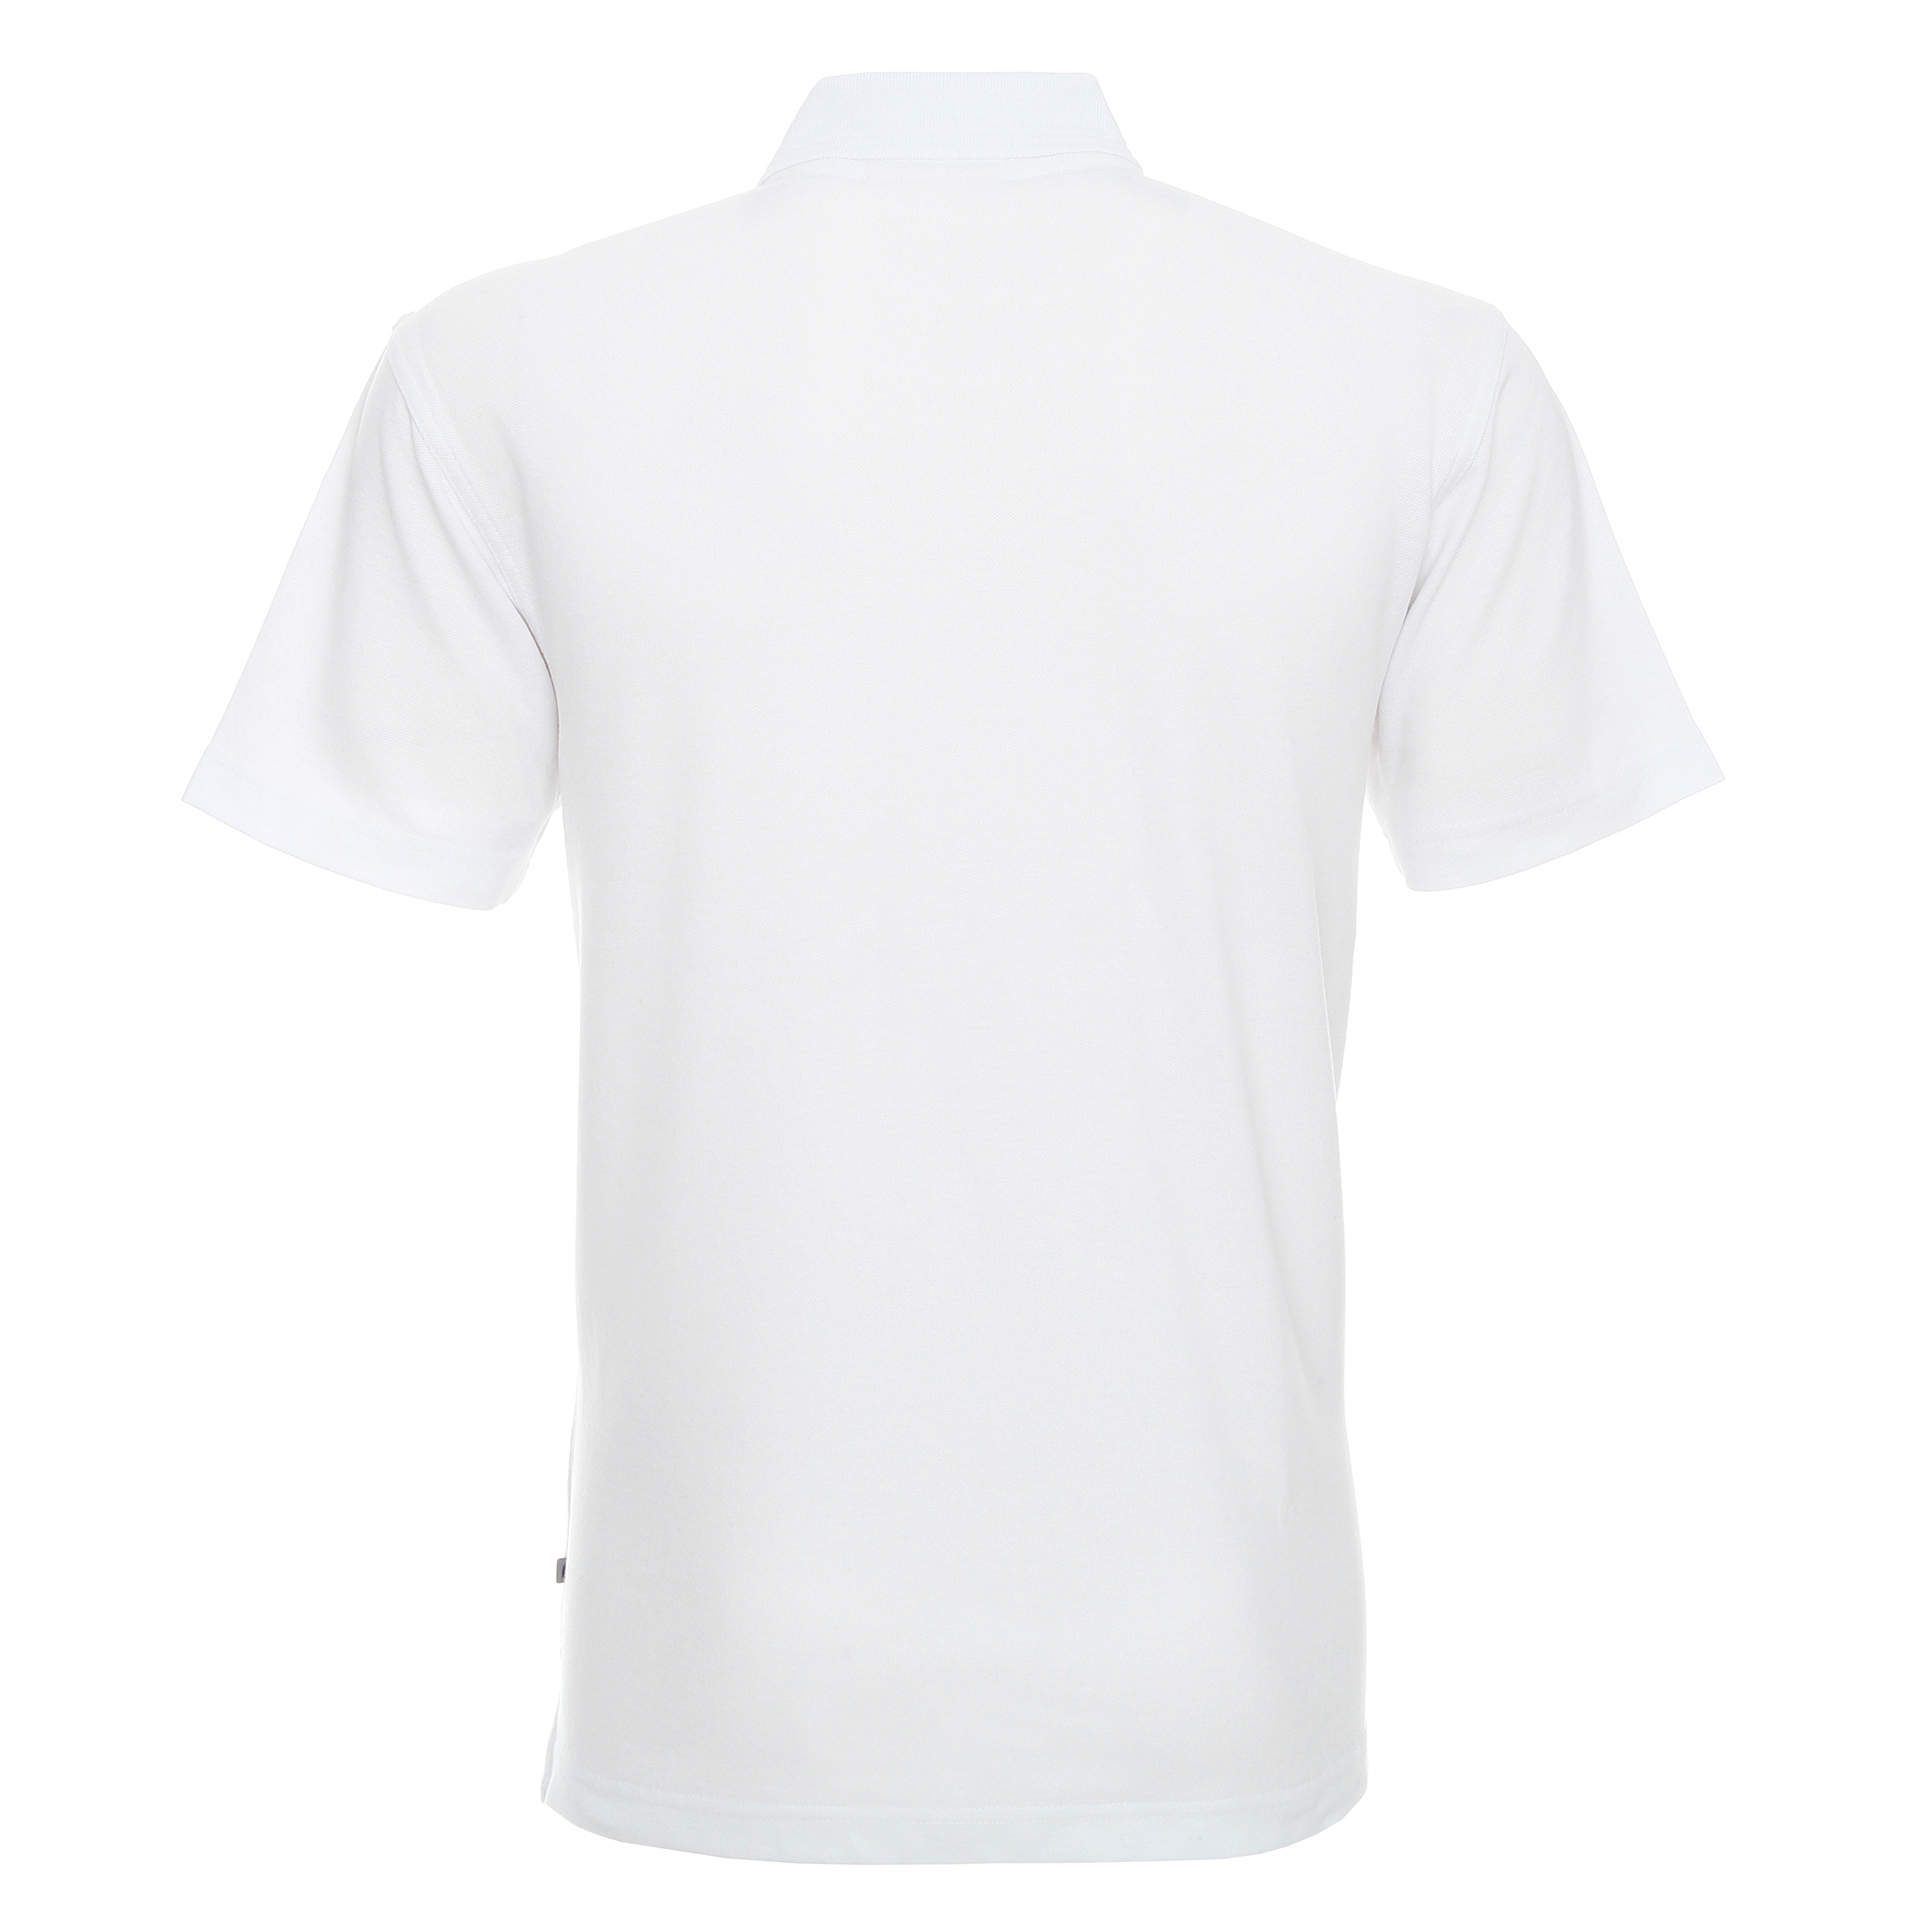 Koszulka Promostars Polo Cotton - biała